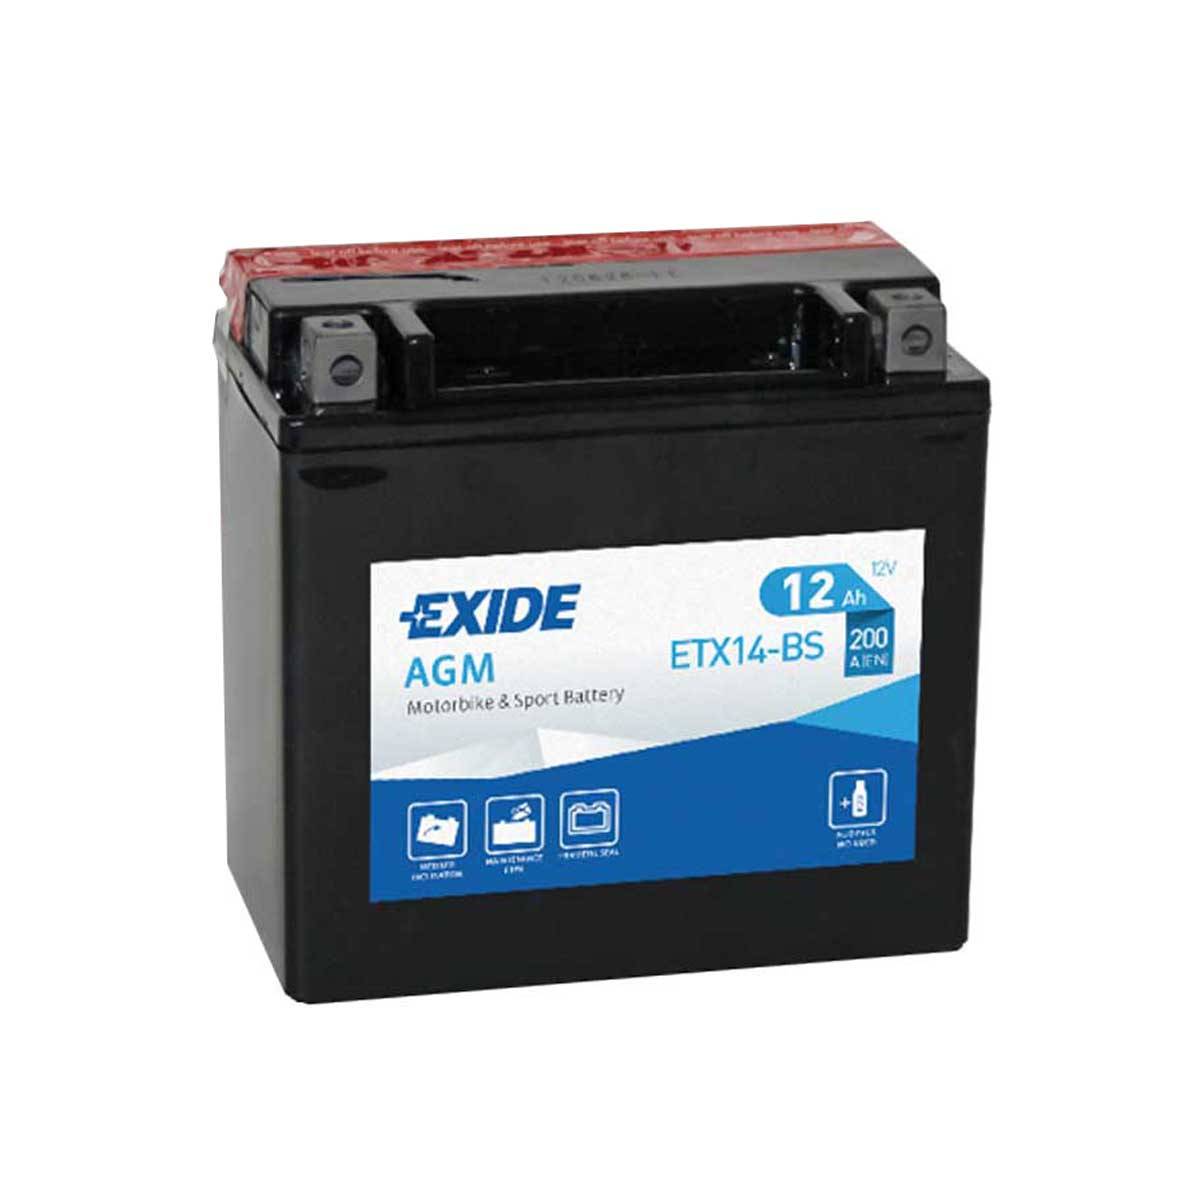 Exide ETX14-BS Bike AGM Motorradbatterie 12V 12Ah 200A DIN 51214, Starterbatterie, Motorrad, Kfz, Batterien für